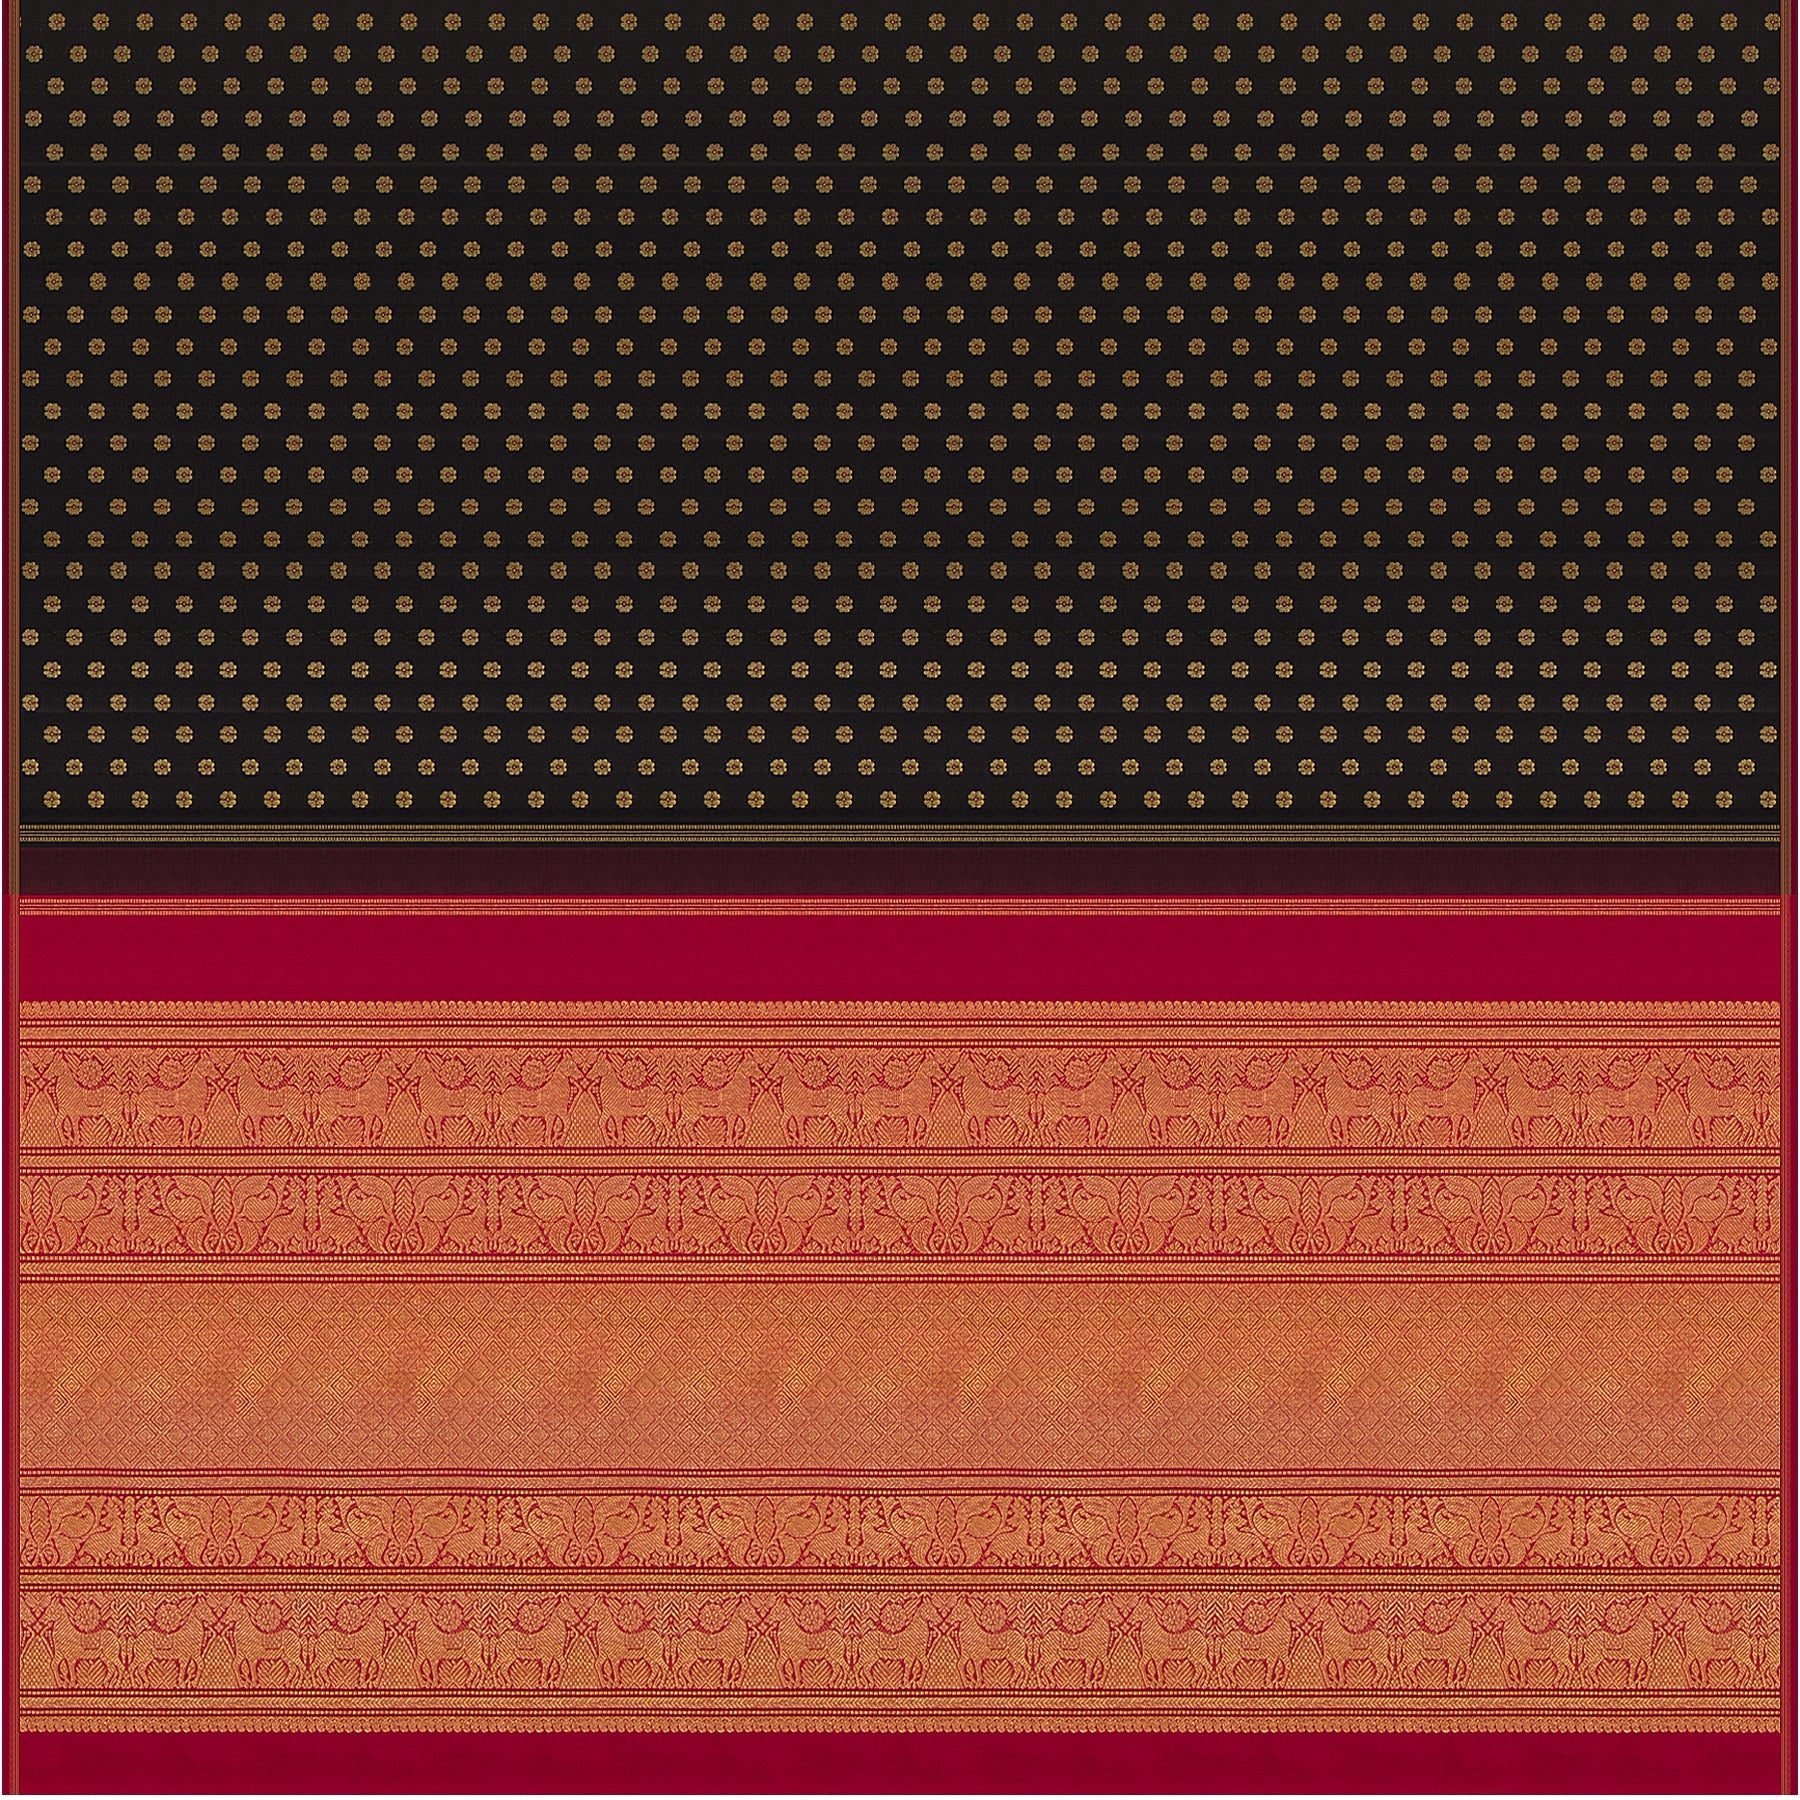 Kanakavalli Kanjivaram Silk Sari 22-595-HS001-13488 - Full View